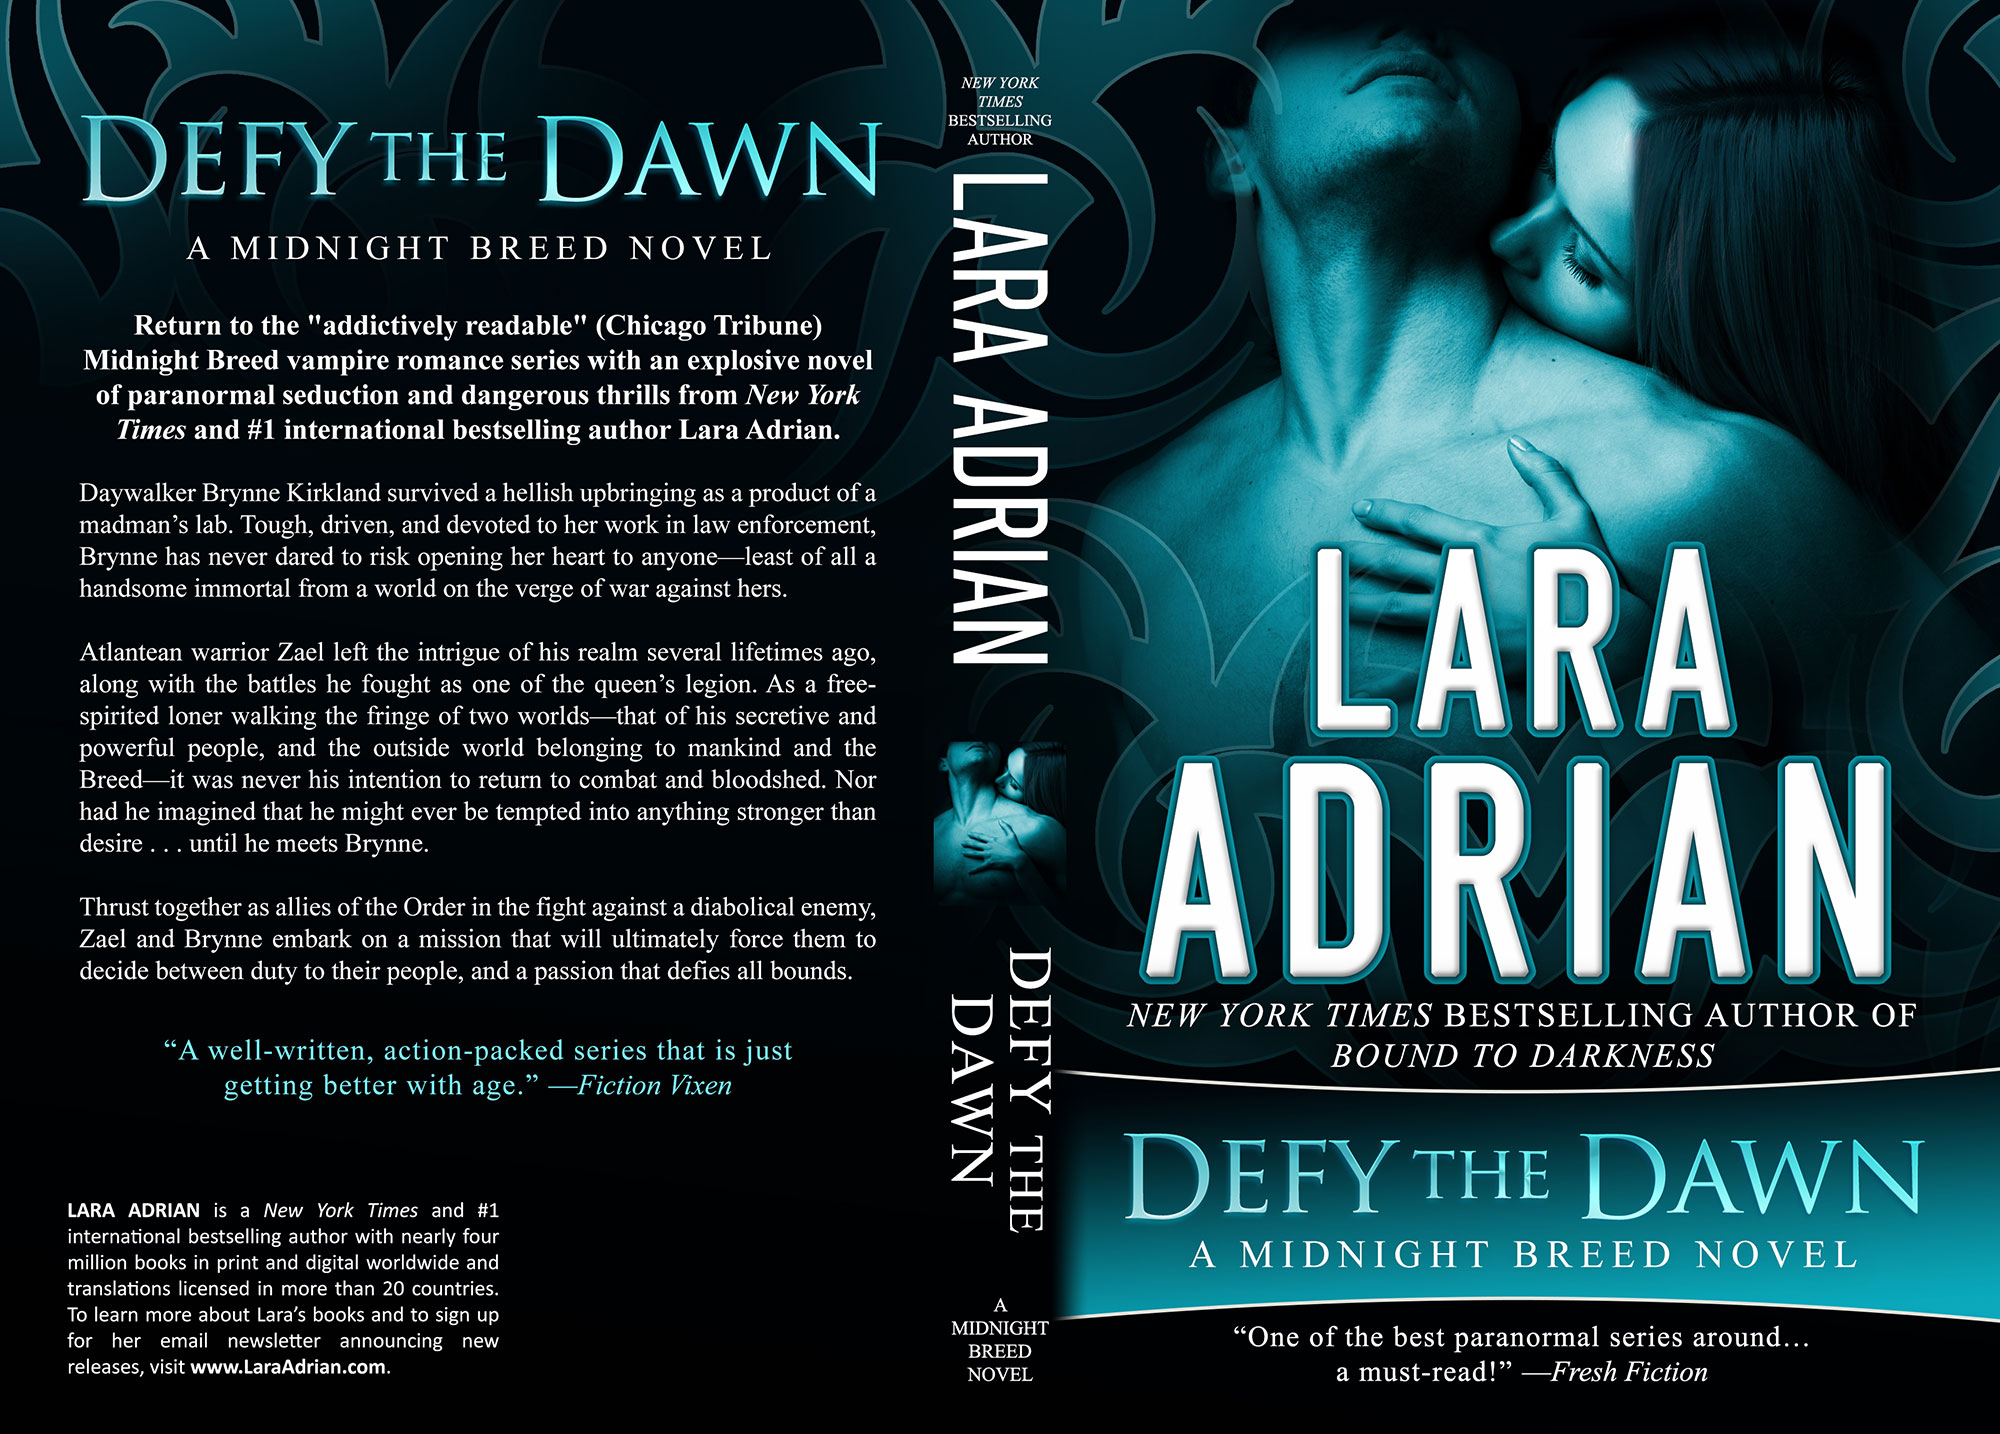 Defy the Dawn by Lara Adrian (Print Coverflat)